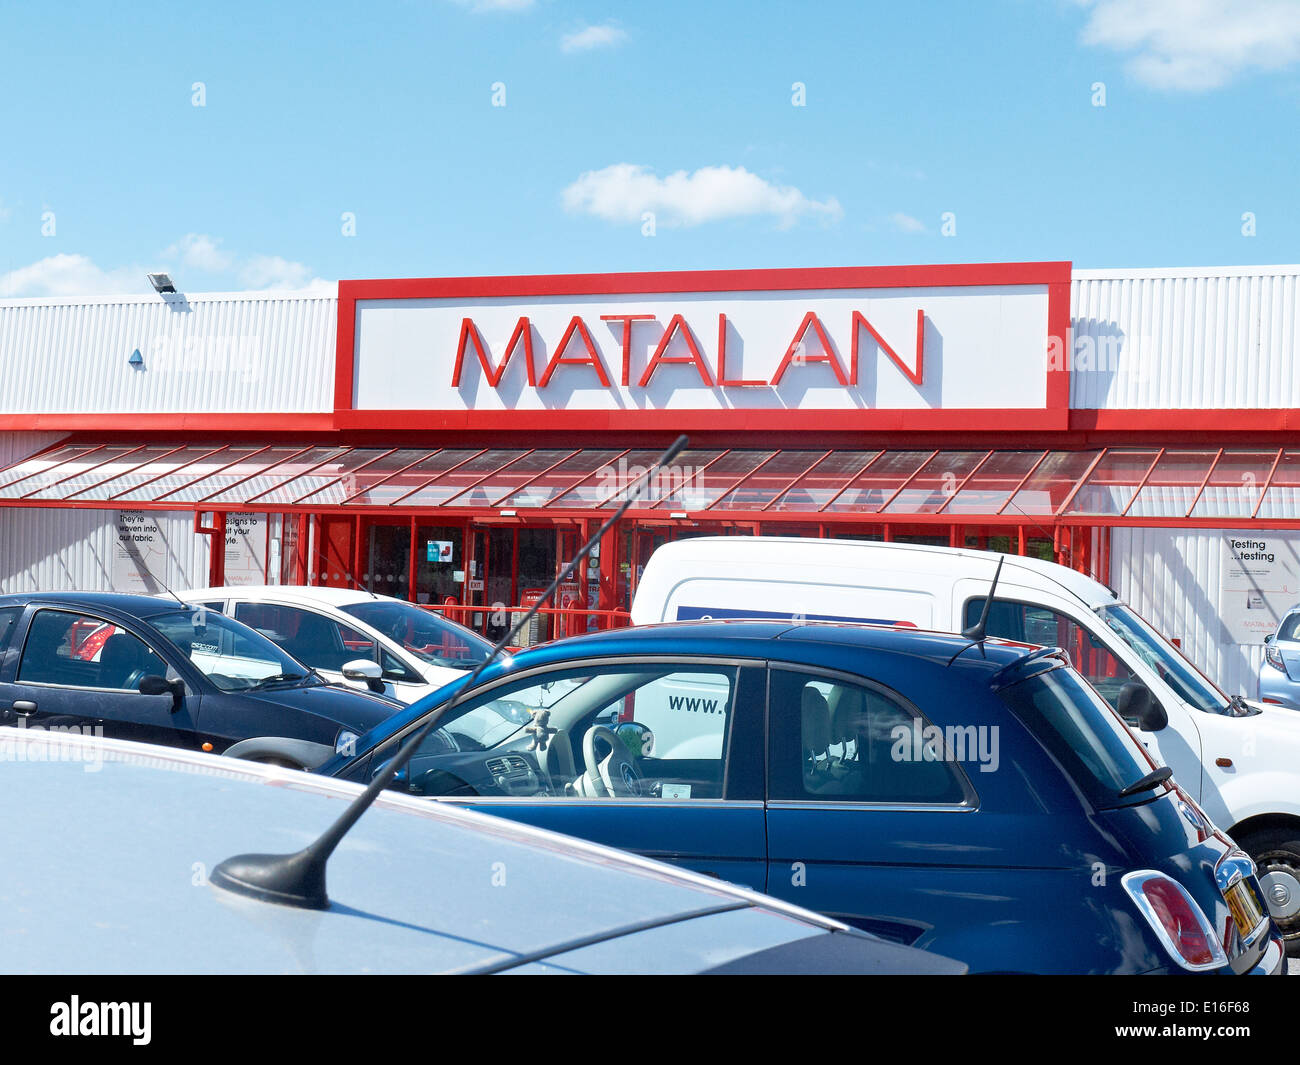 Matalan shop sign UK Stock Photo